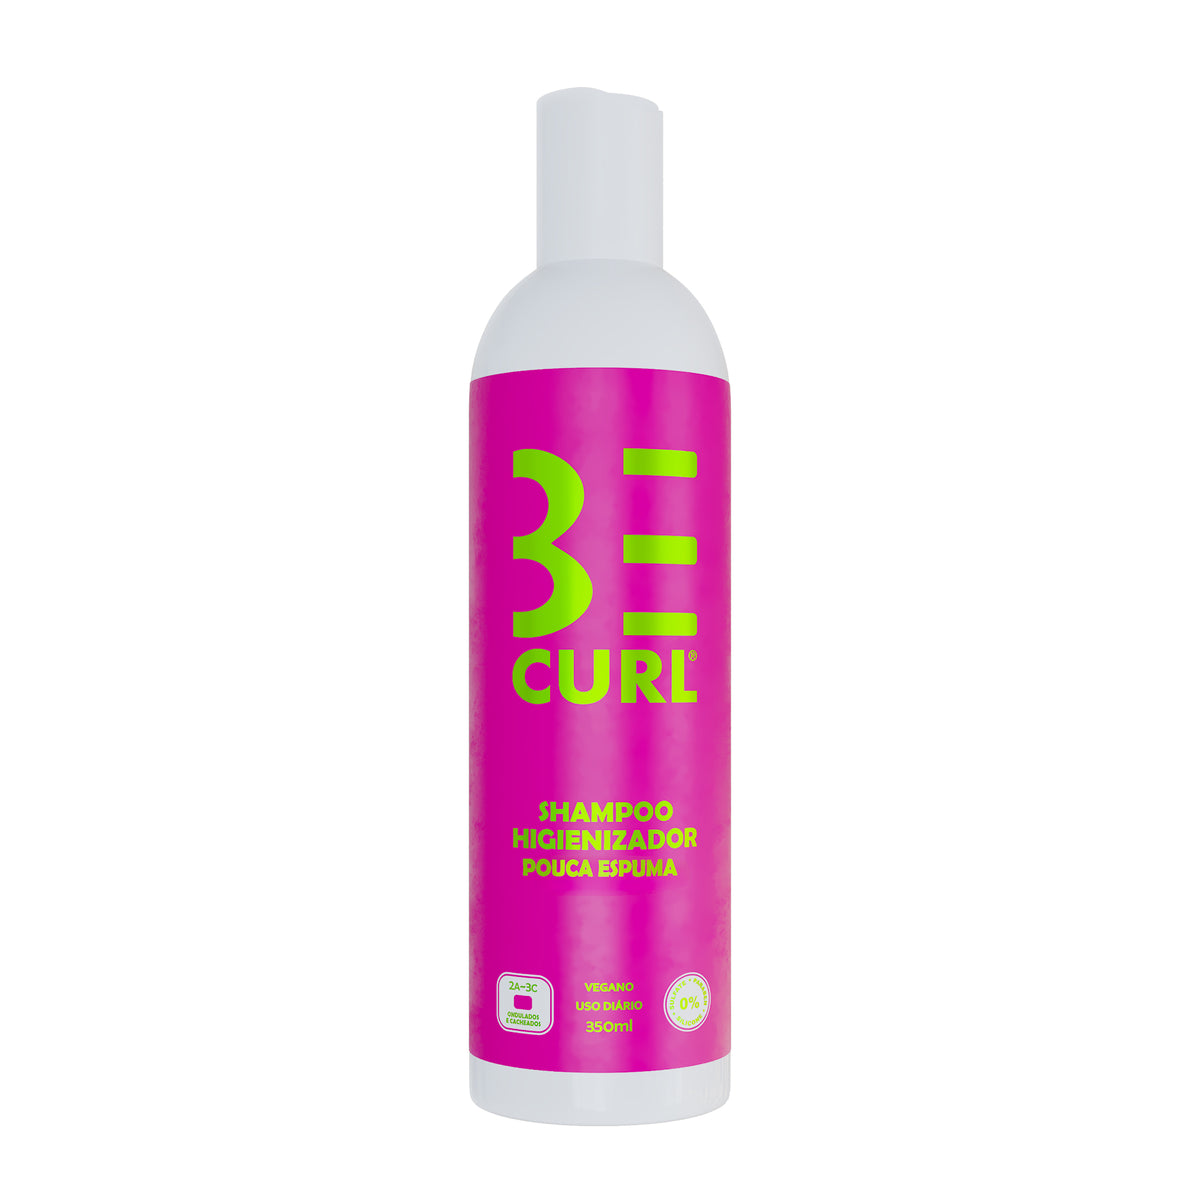 Shampoo Higienizador Pouca Espuma 350ml